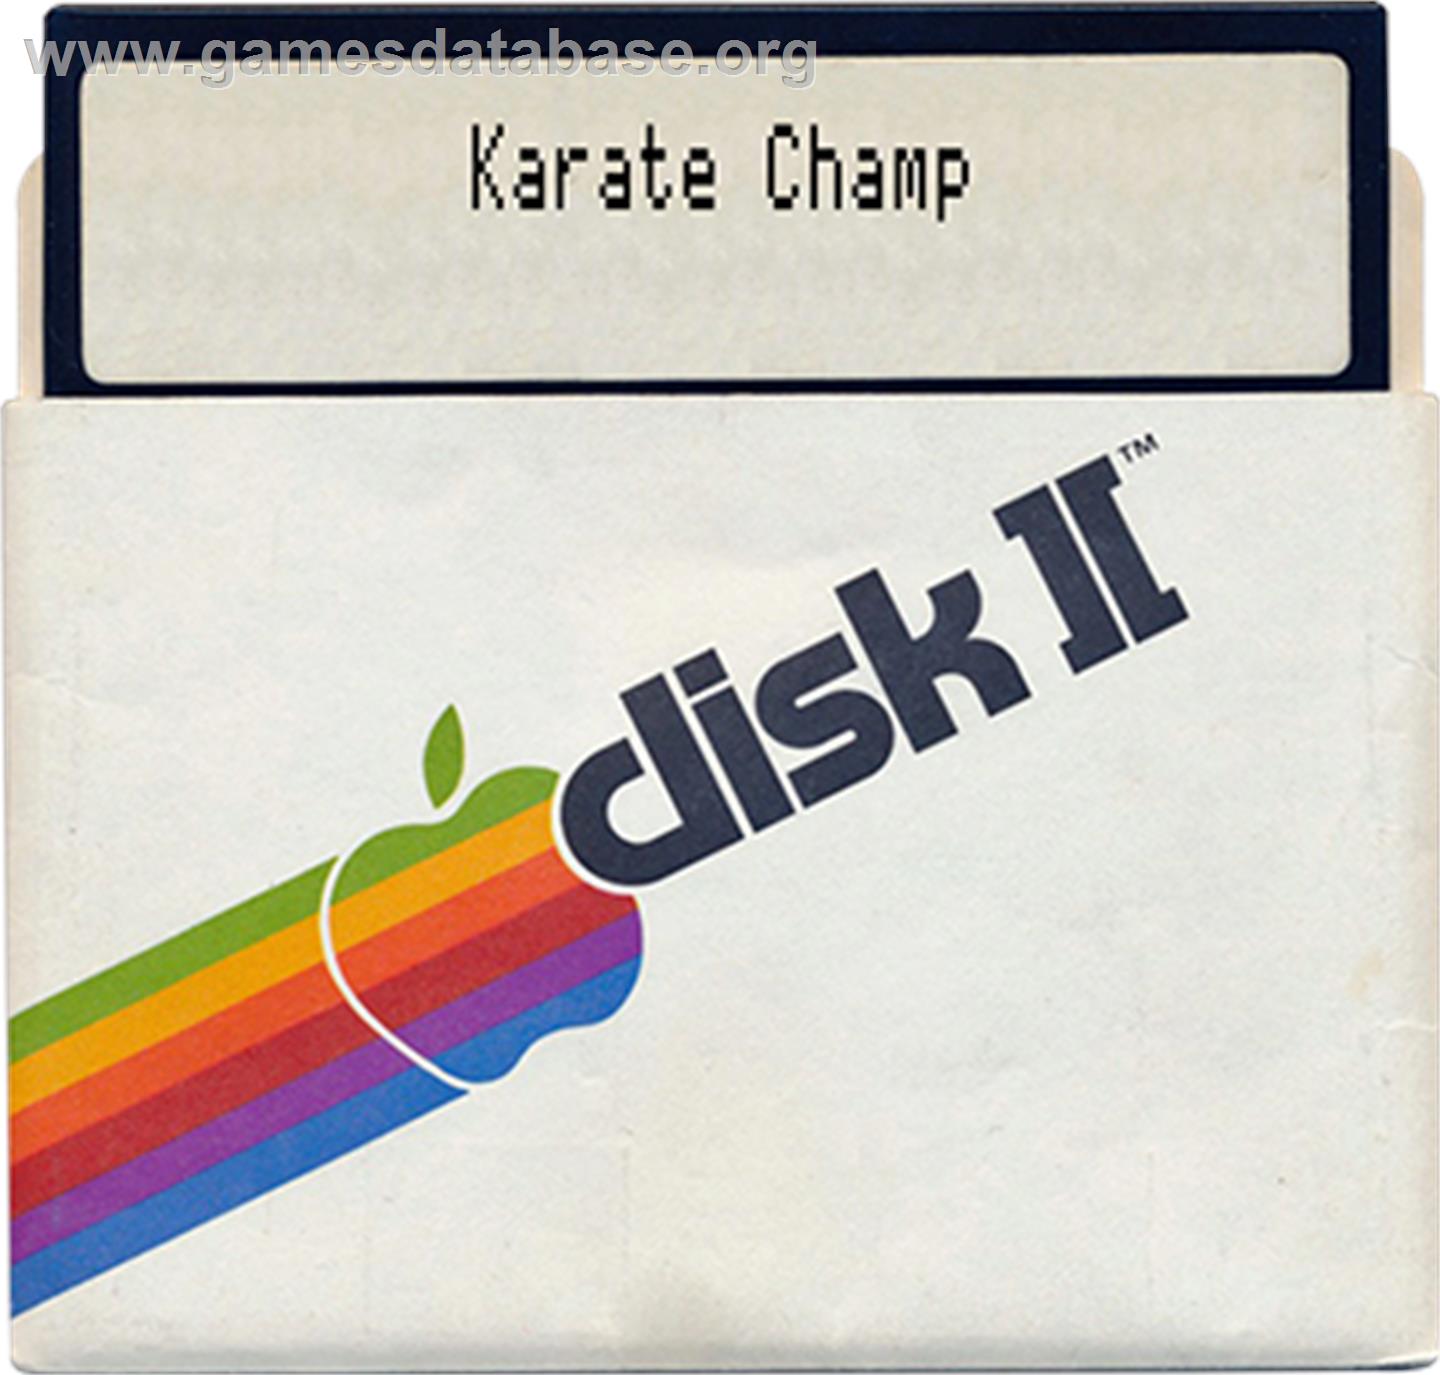 Karate Champ - Apple II - Artwork - Disc